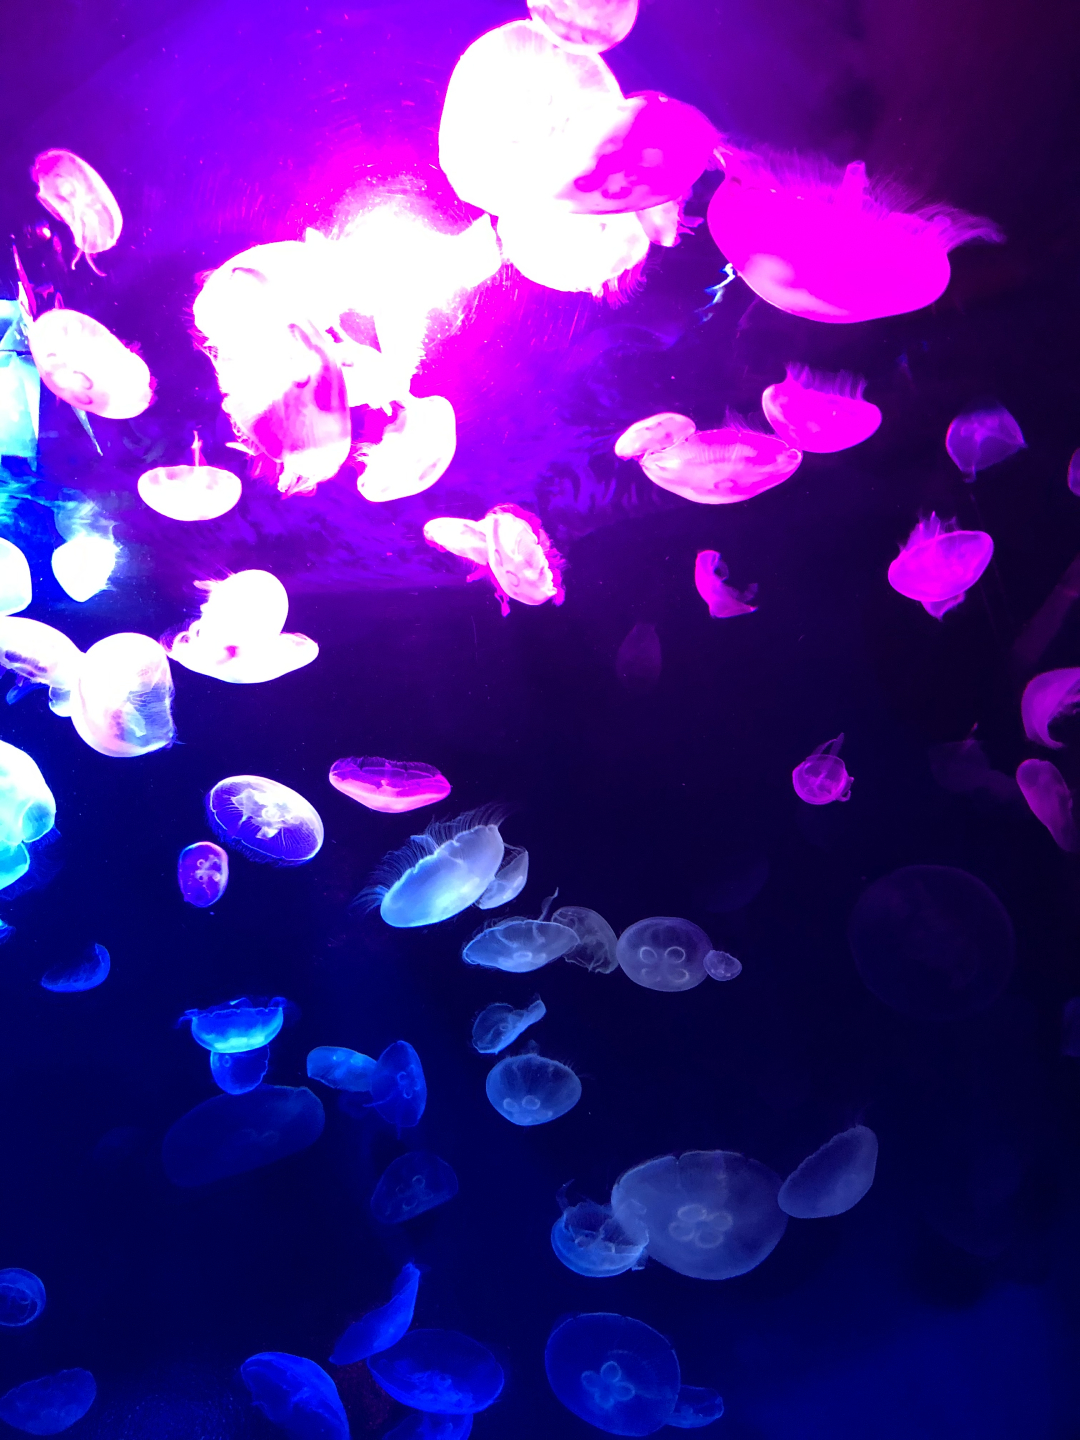 新エリア 海月空感 くらげくうかん がピンクに染まる 夜のサンシャイン水族館 もっと 性いっぱい展 開催中 レポ 画像5 Sgs109